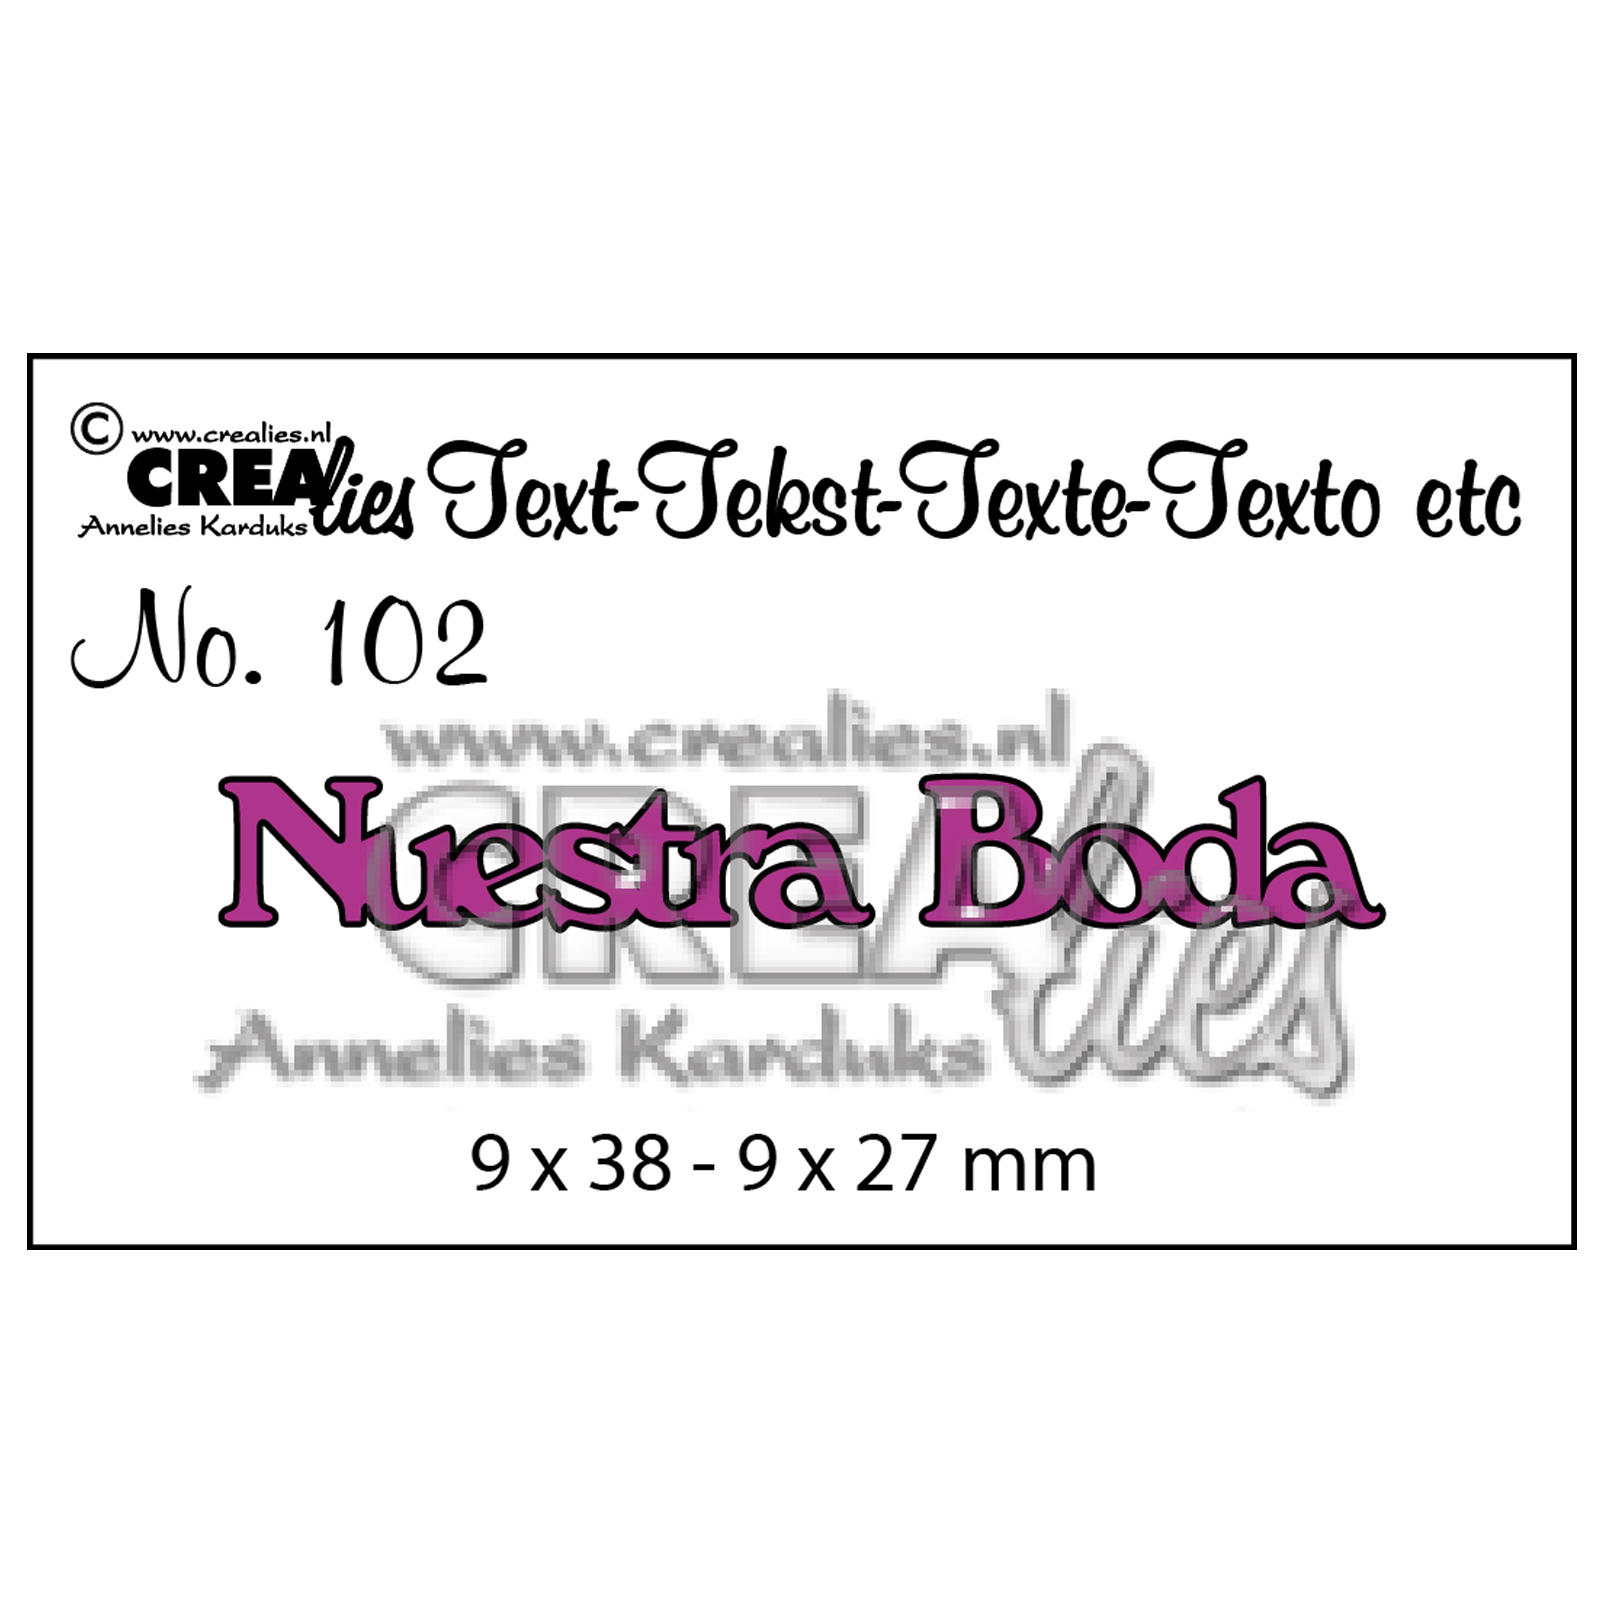 Crealies • Spanische Text Stanzschablone no.102 "Nuestra Boda"